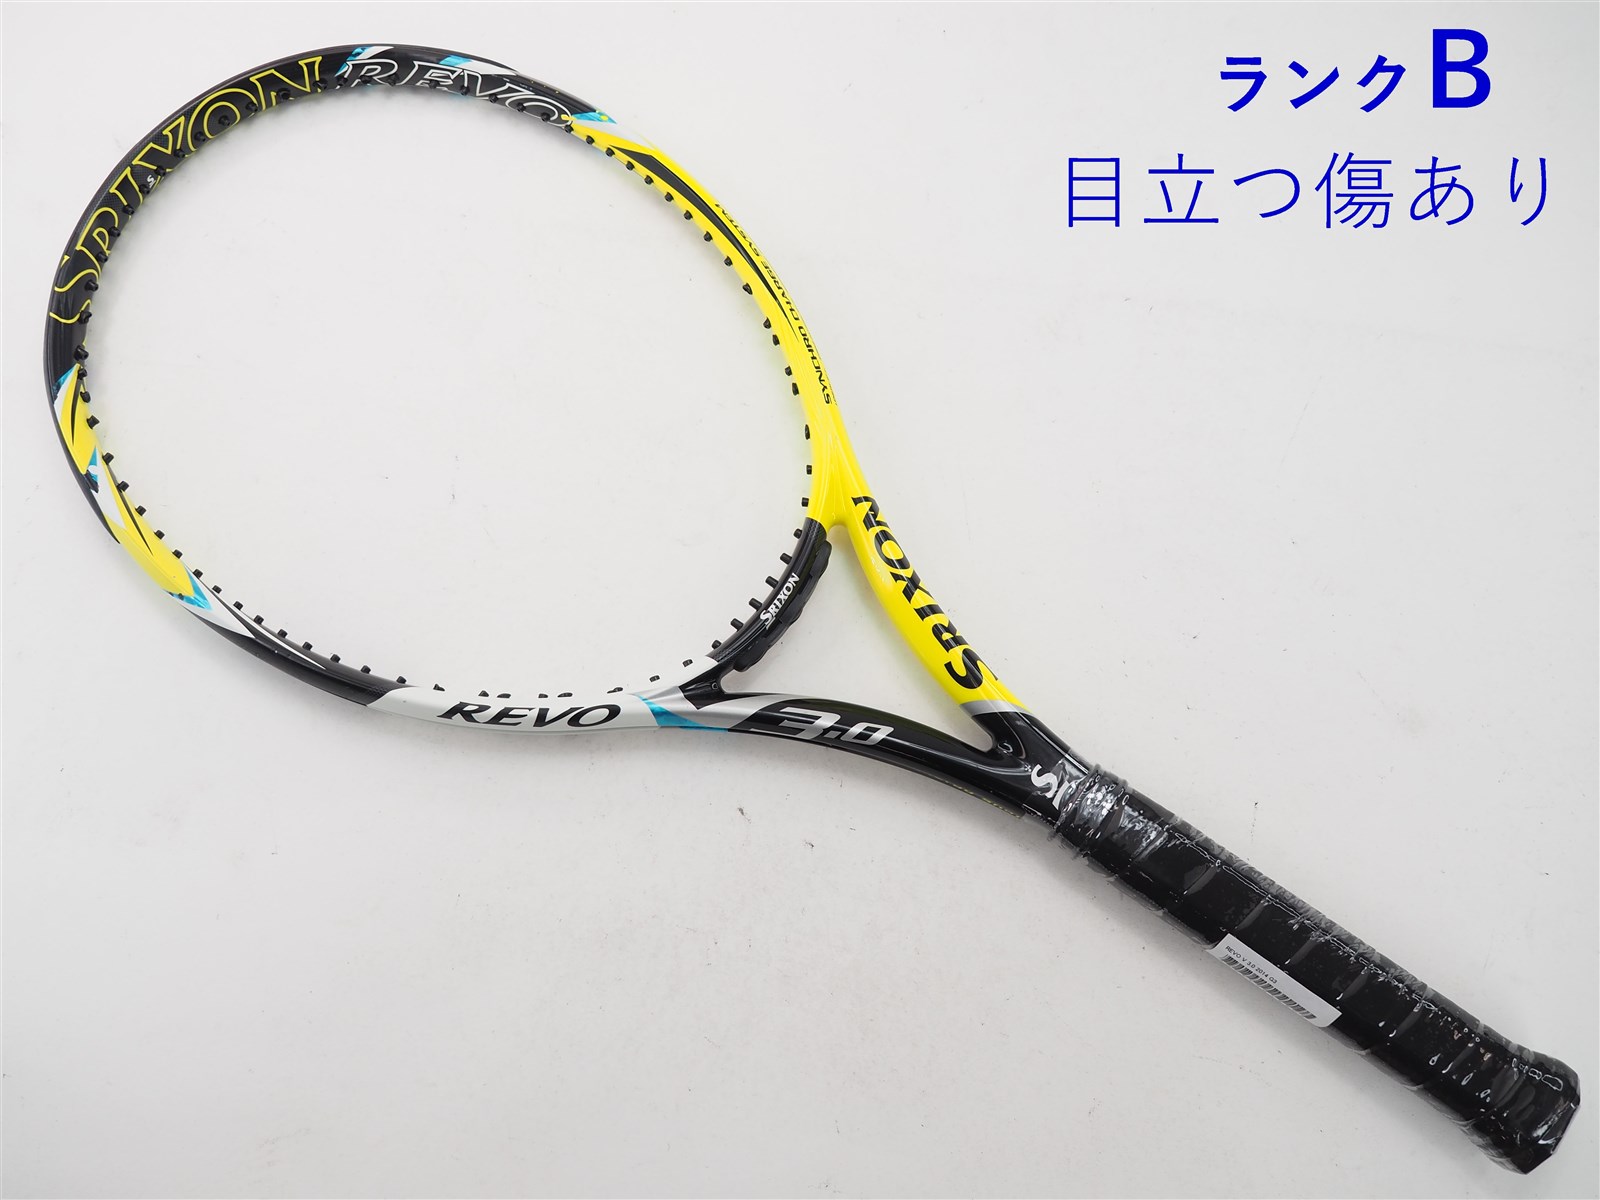 【中古】スリクソン レヴォ ブイ 3.0 2014年モデルSRIXON REVO V 3.0 2014(G3)【中古 テニスラケット】【送料無料】